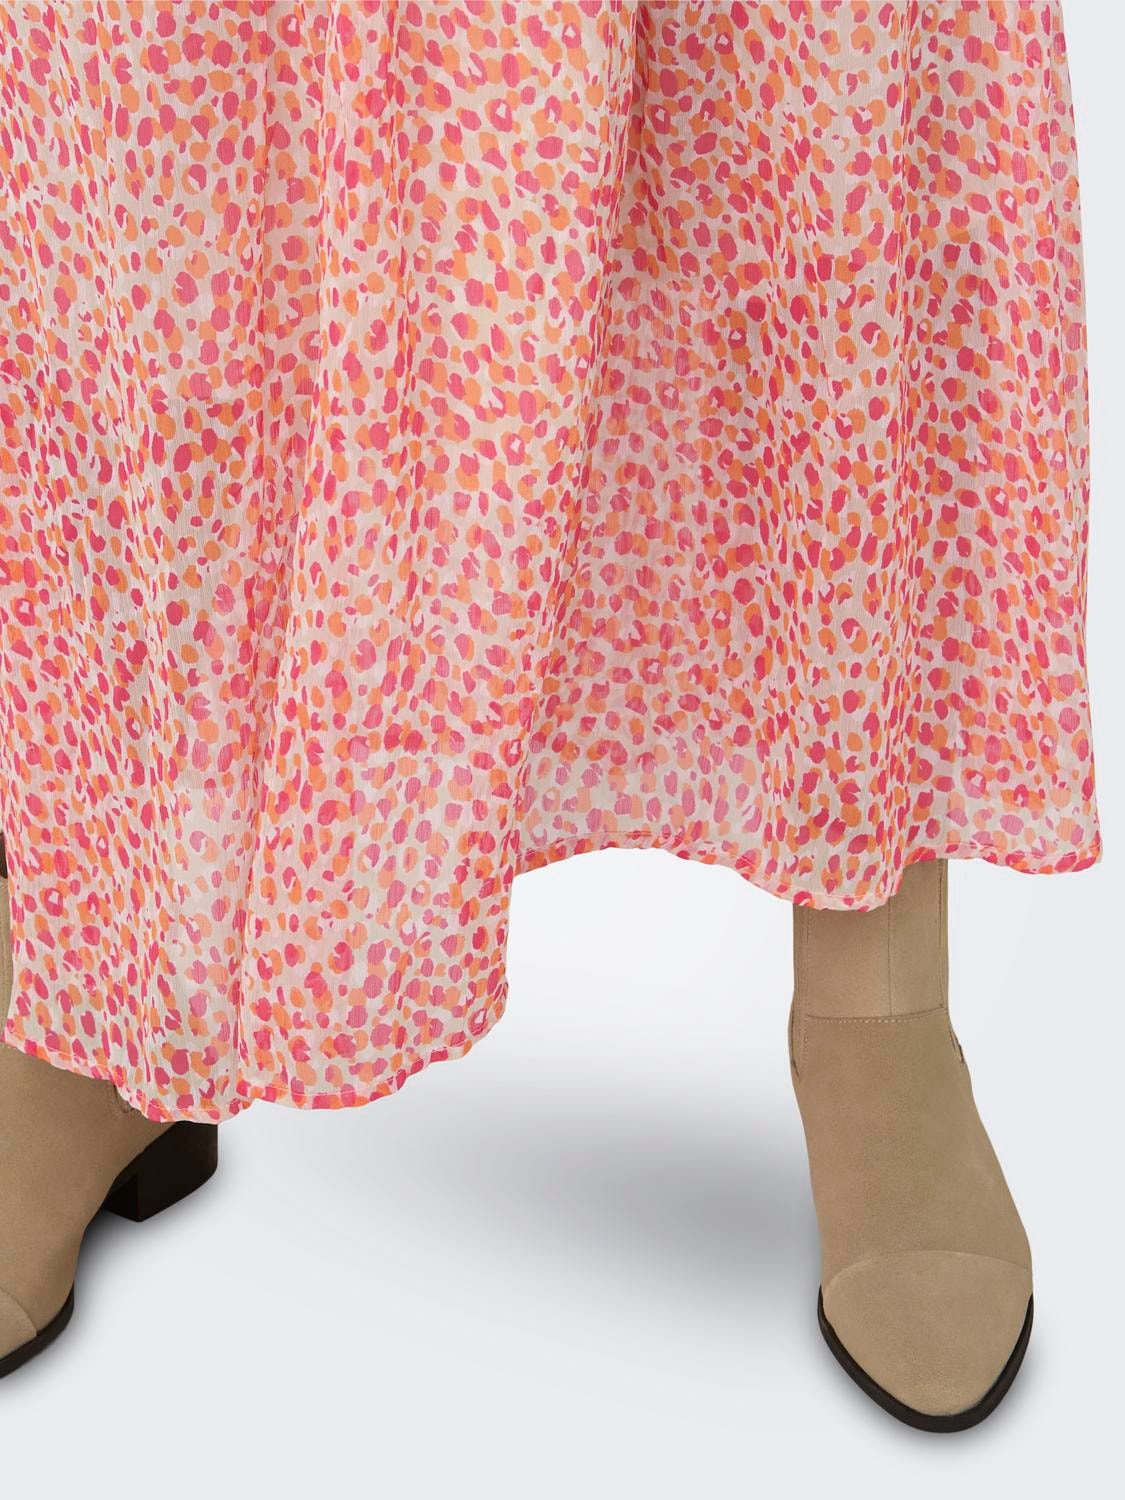 ONLY High waist Long skirt -Oatmeal - 15318072